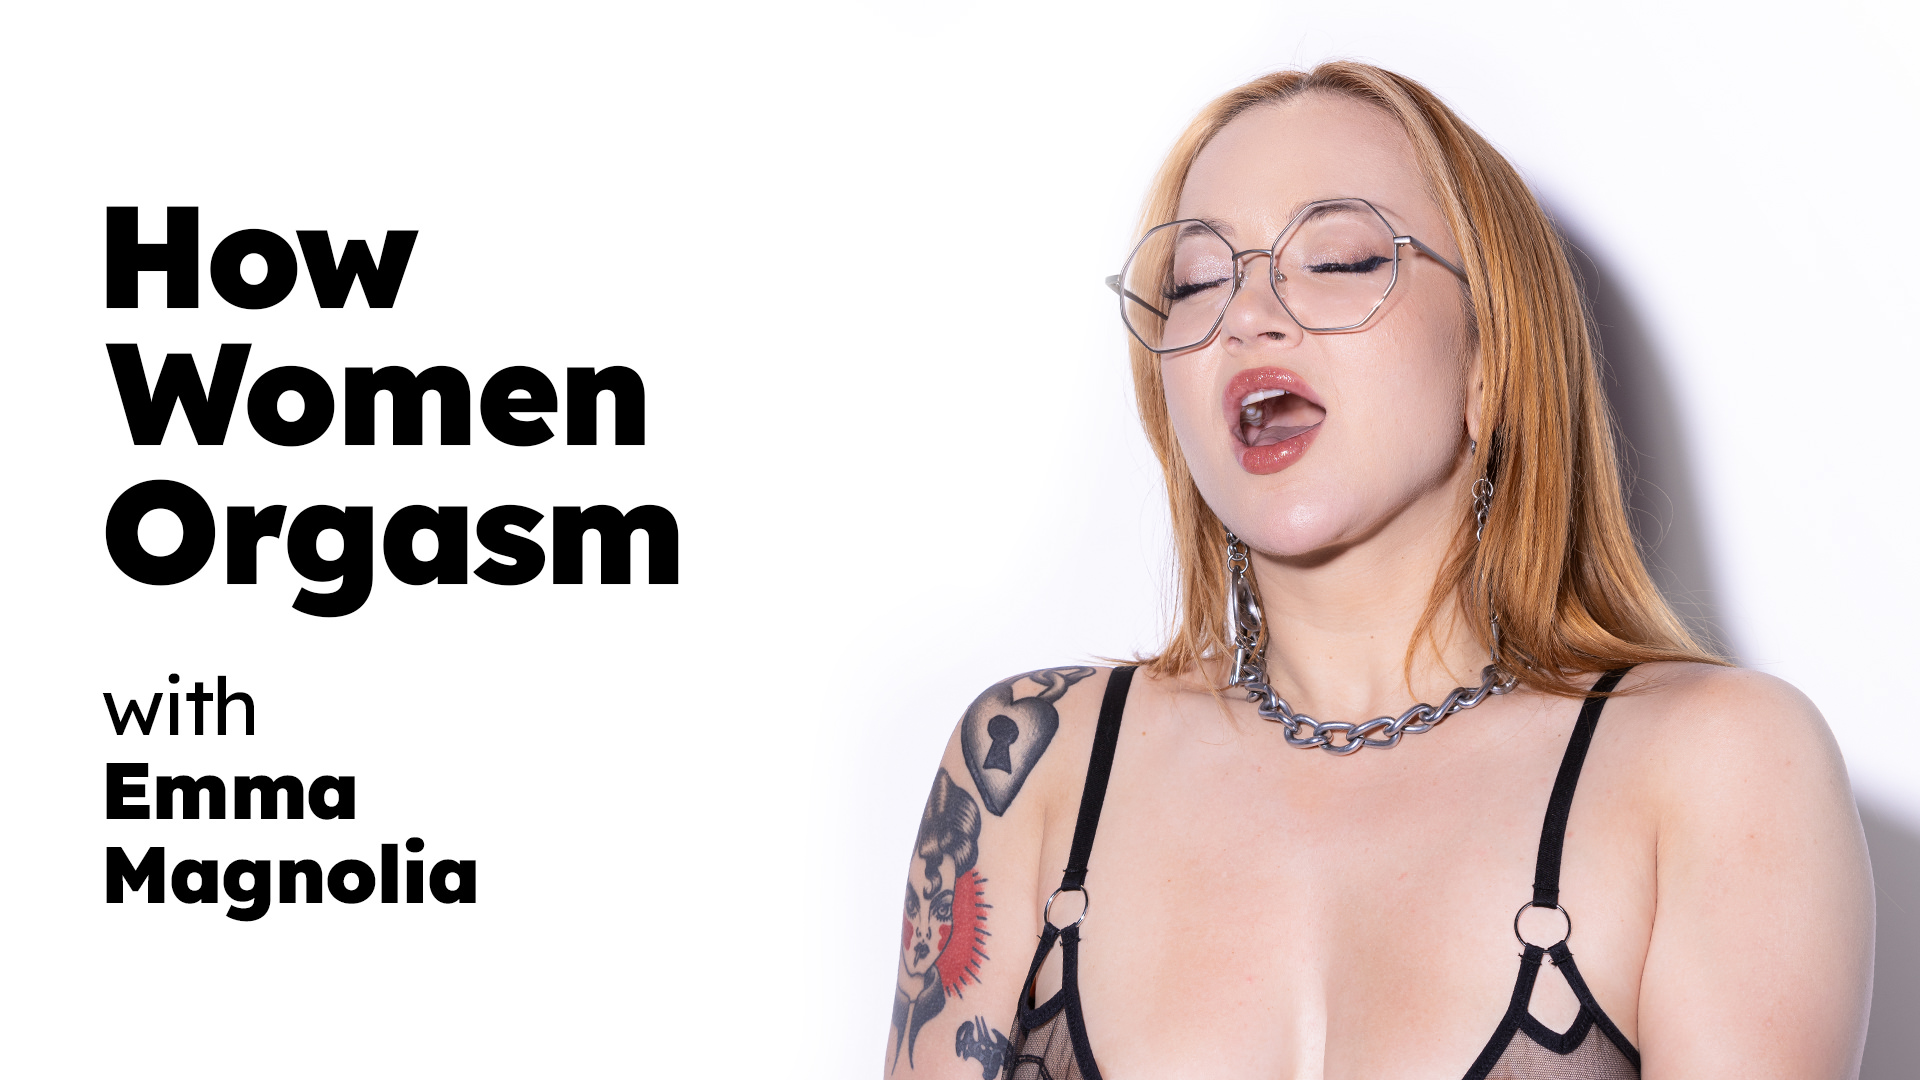 Emma Magnolia “How Women Orgasm – Emma Magnolia” HowWomenOrgasm